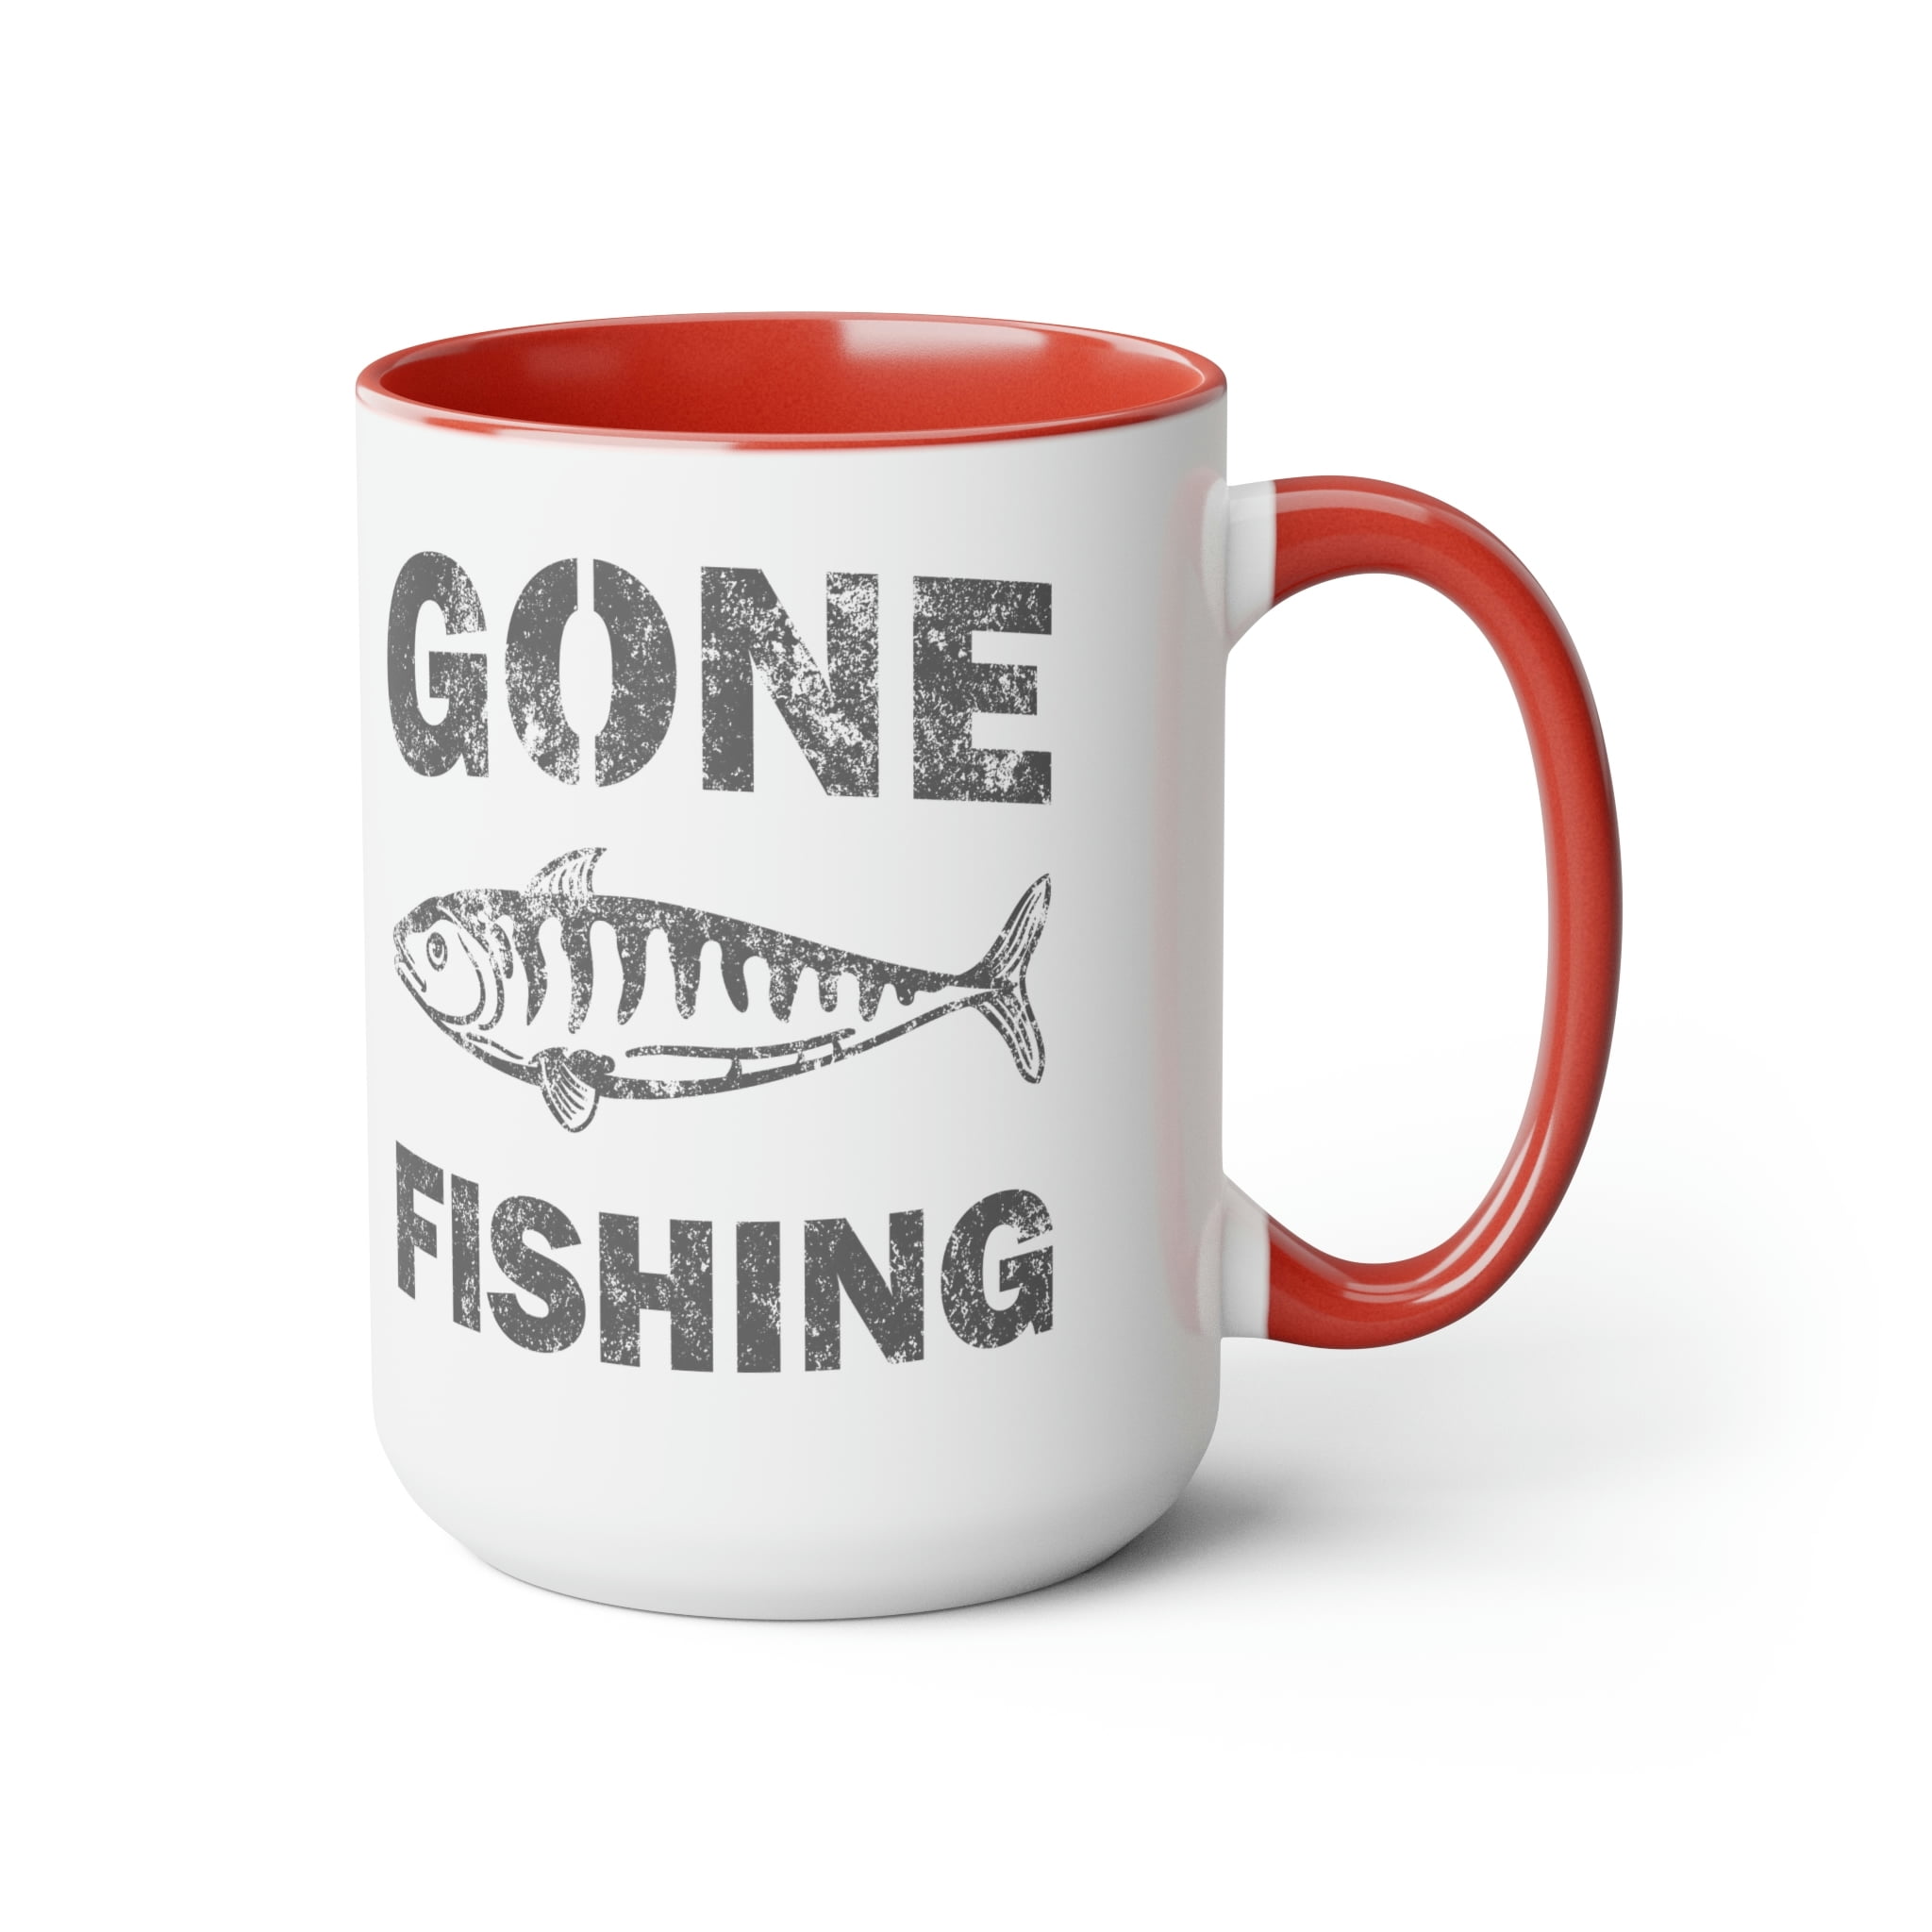 Fishing - 13 oz Mug